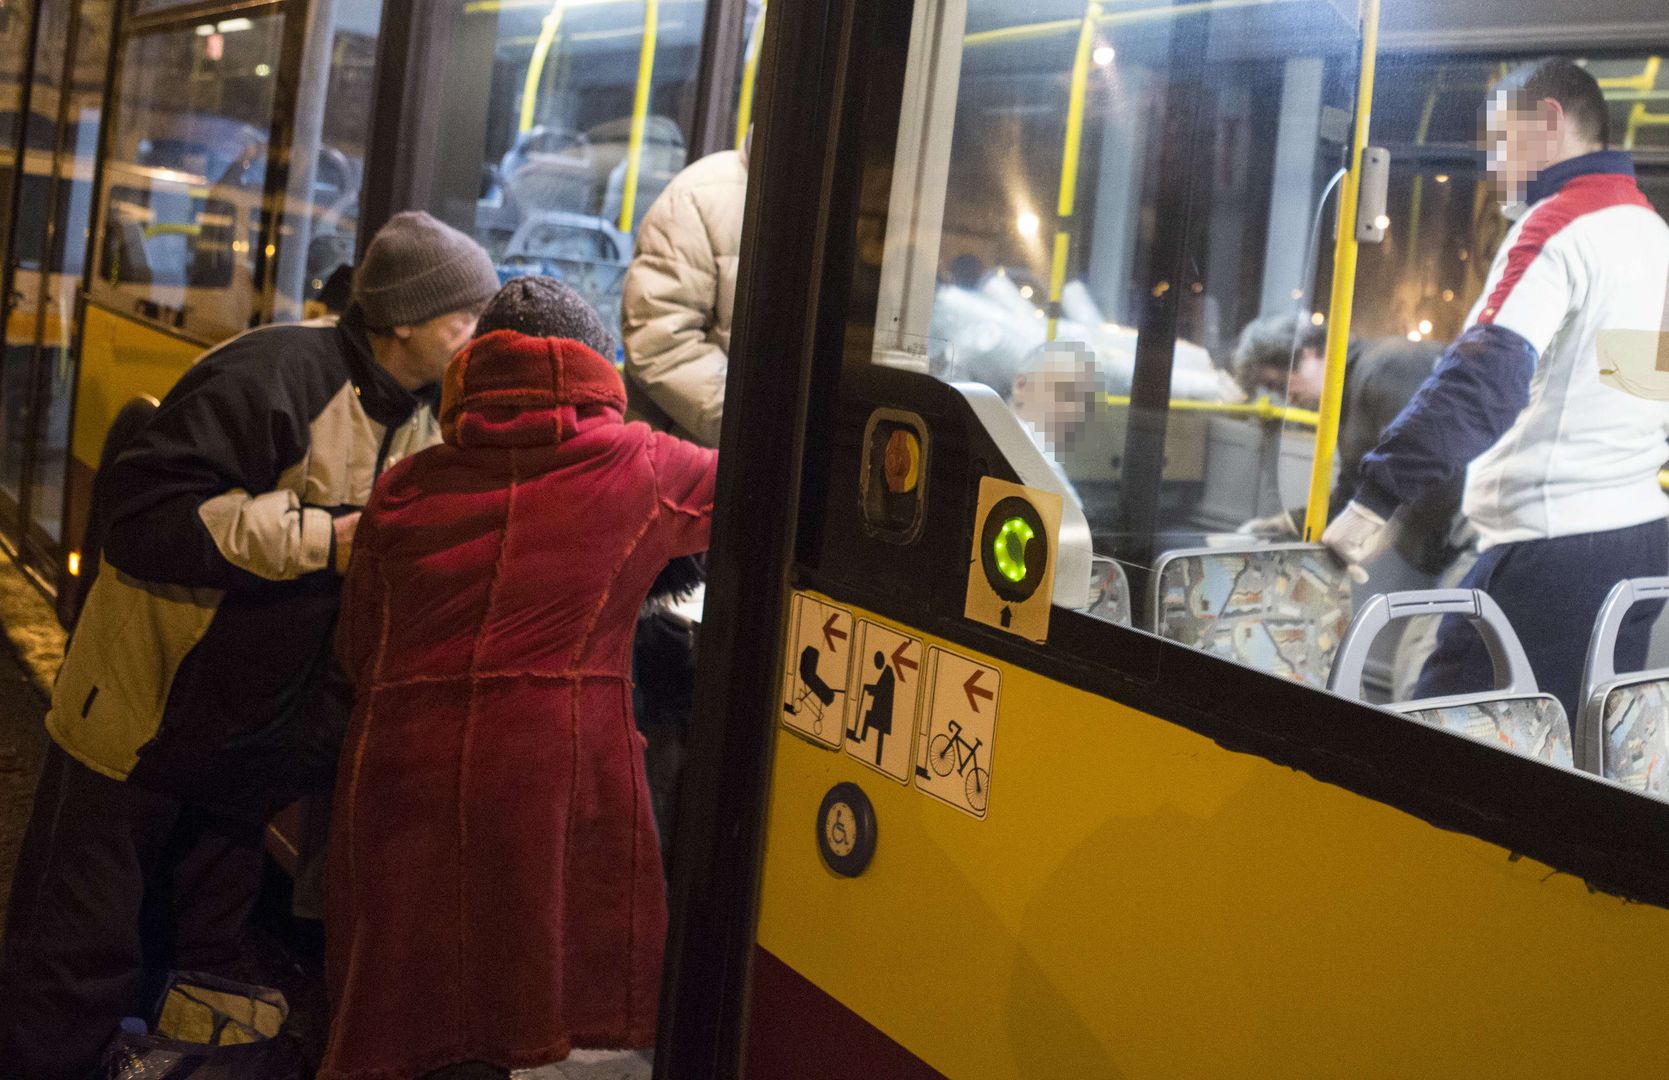 Ochroniarze będą jeździć w miejskich autobusach